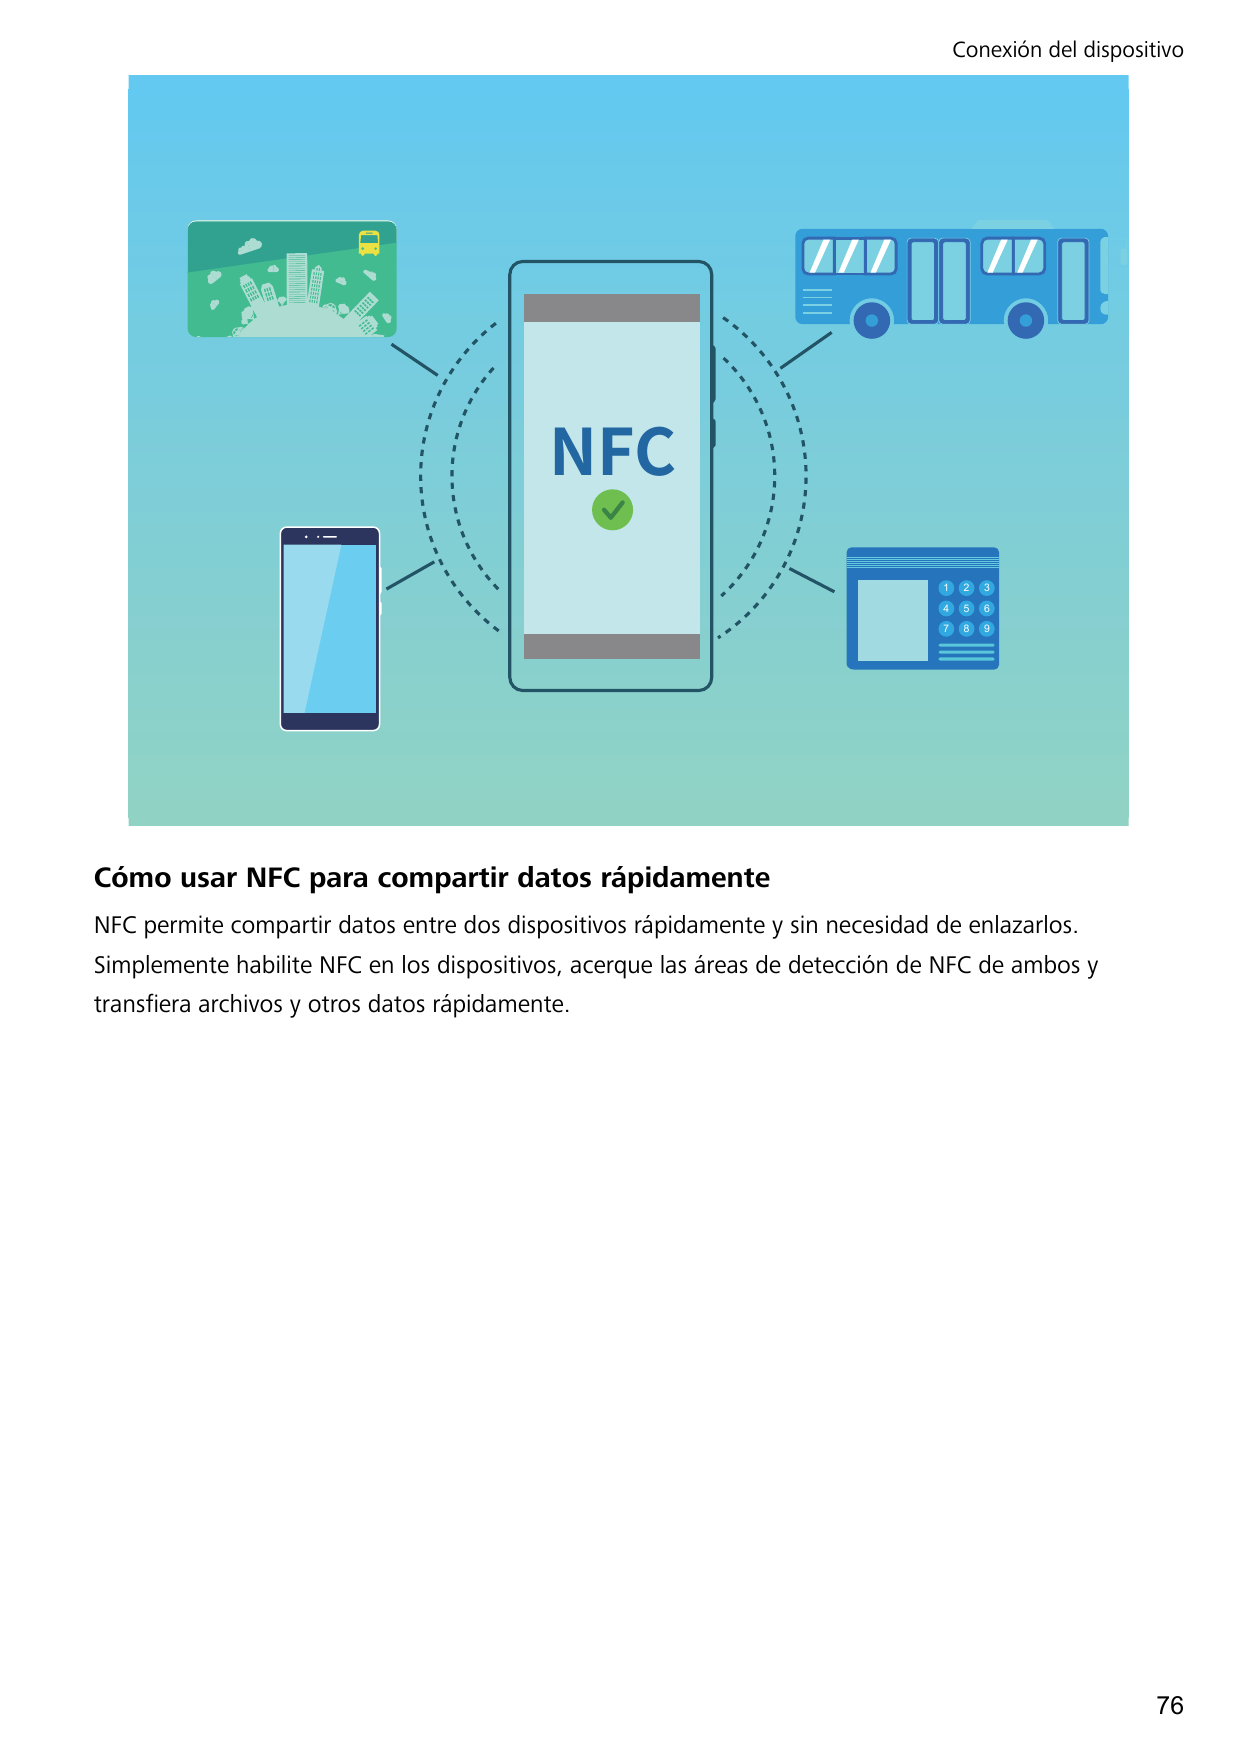 Conexión del dispositivo/'$123456789Cómo usar NFC para compartir datos rápidamenteNFC permite compartir datos entre dos disposit